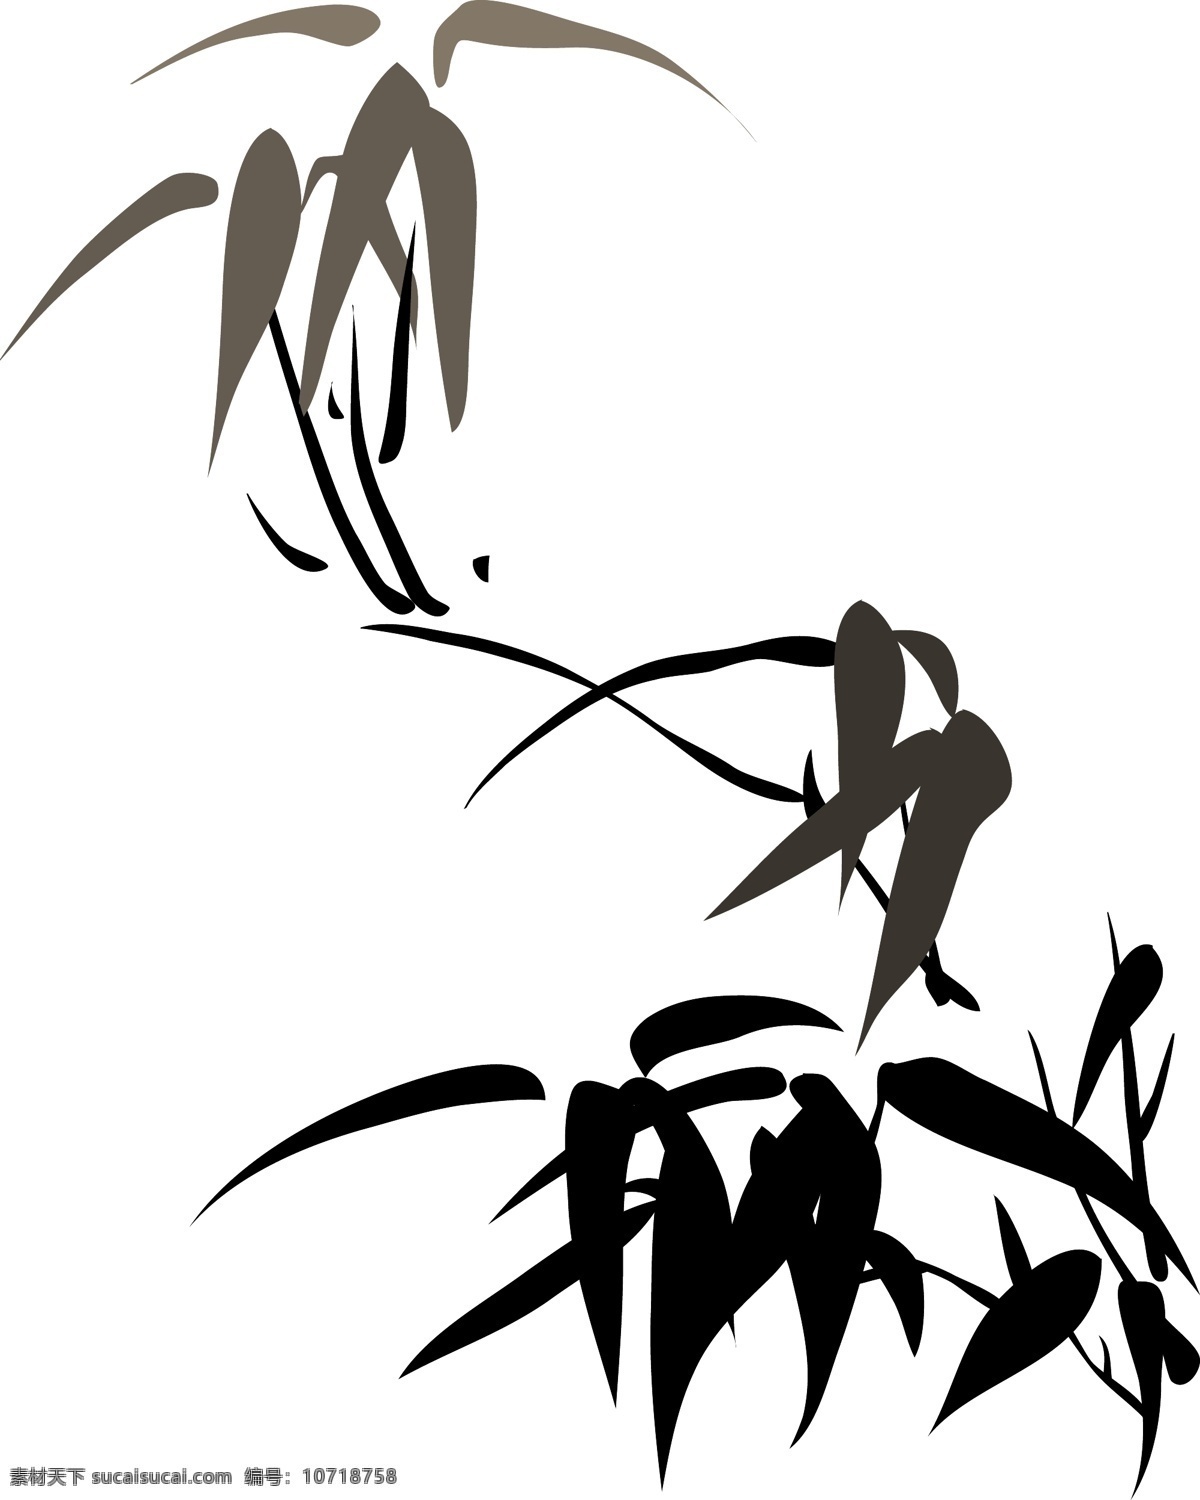 抽象 概括 墨色 竹叶 花卉 水墨 中国画 竹子 矢量 矢量图